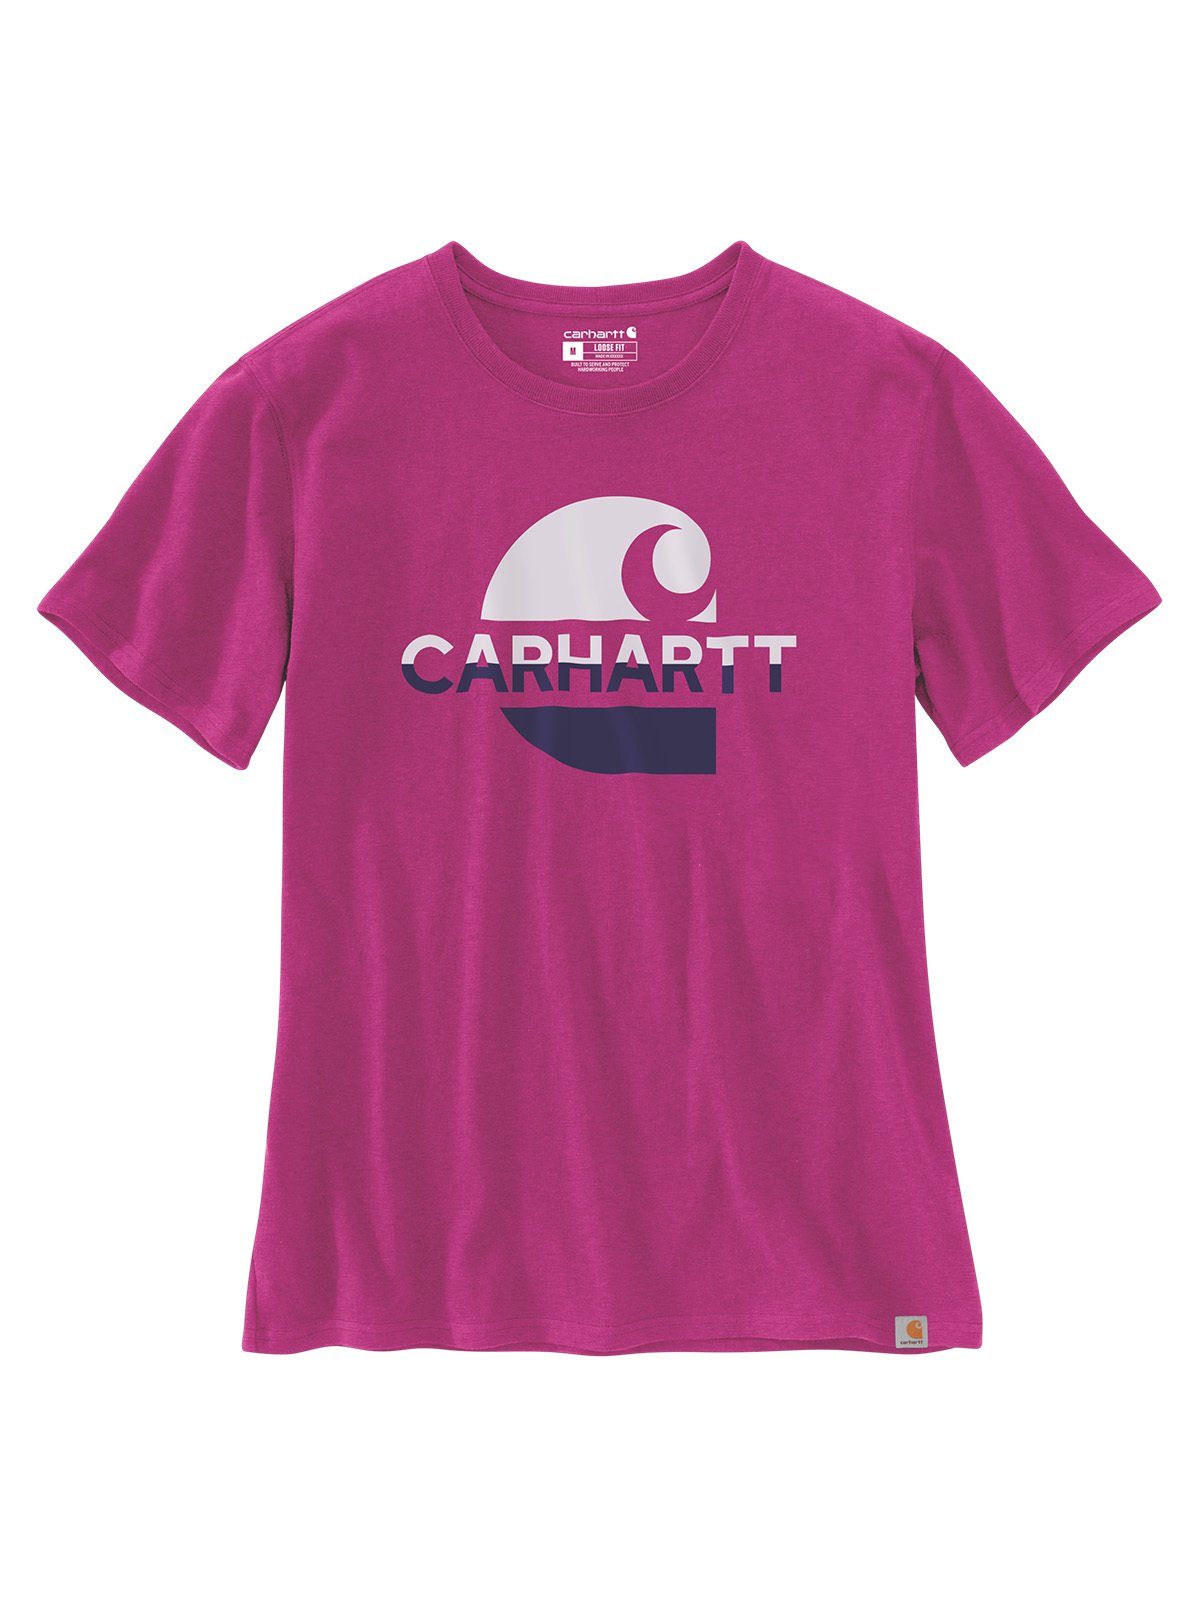 Carhartt T-Shirt Carhartt Graphic pink magenta T-Shirt agate Damen